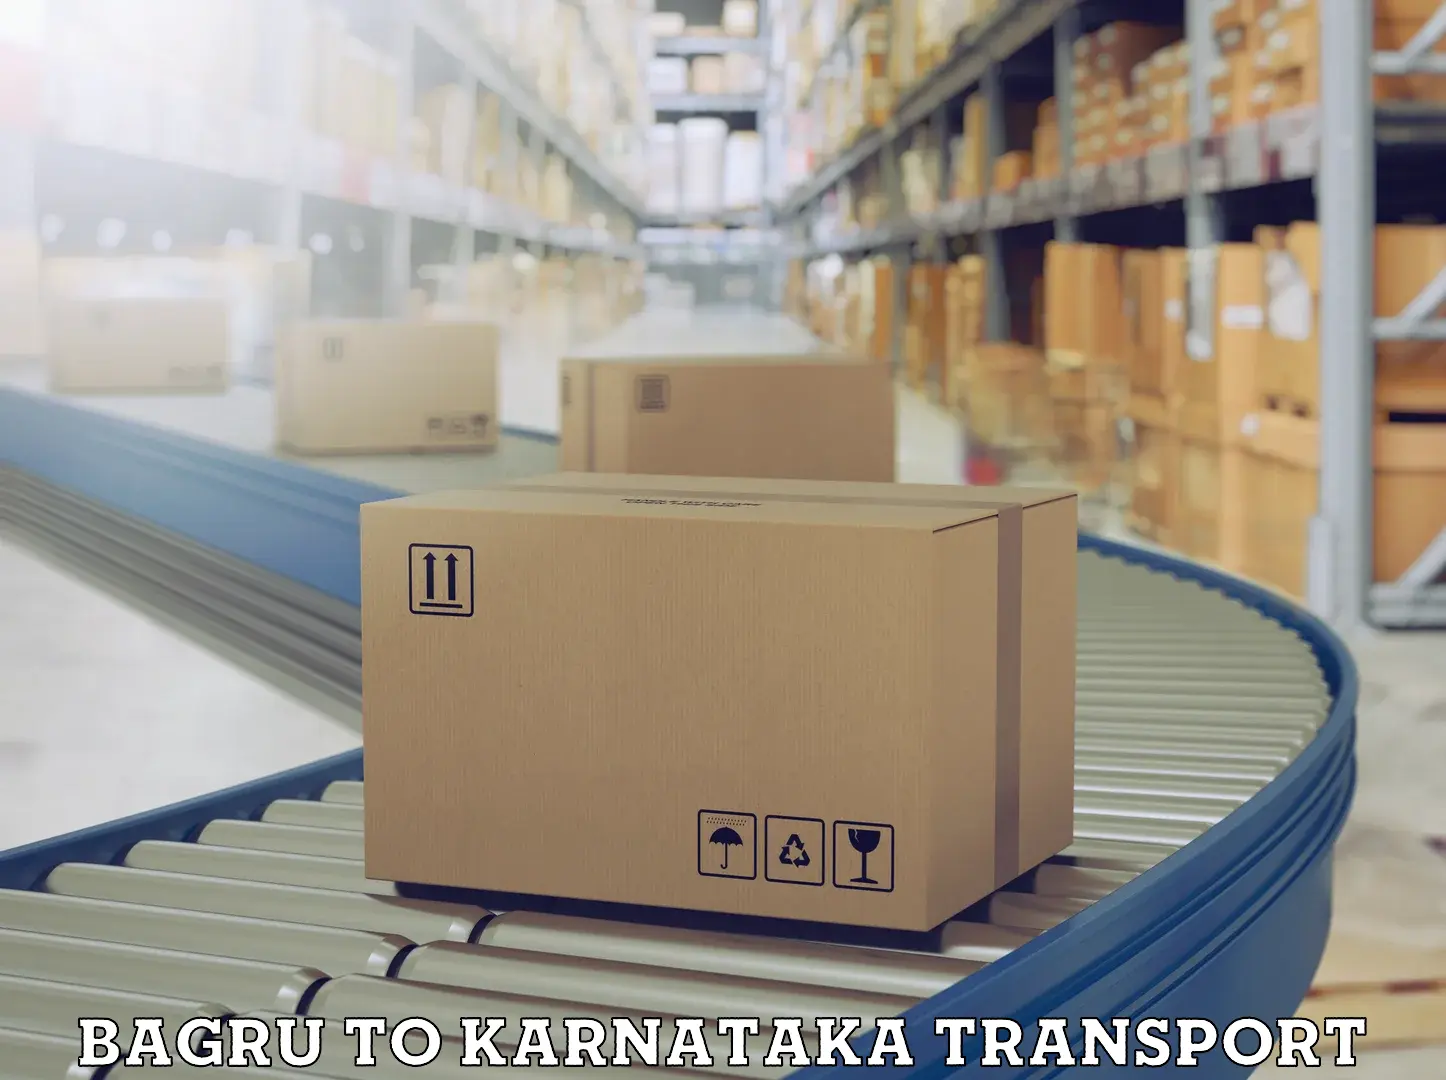 Land transport services Bagru to Karnataka